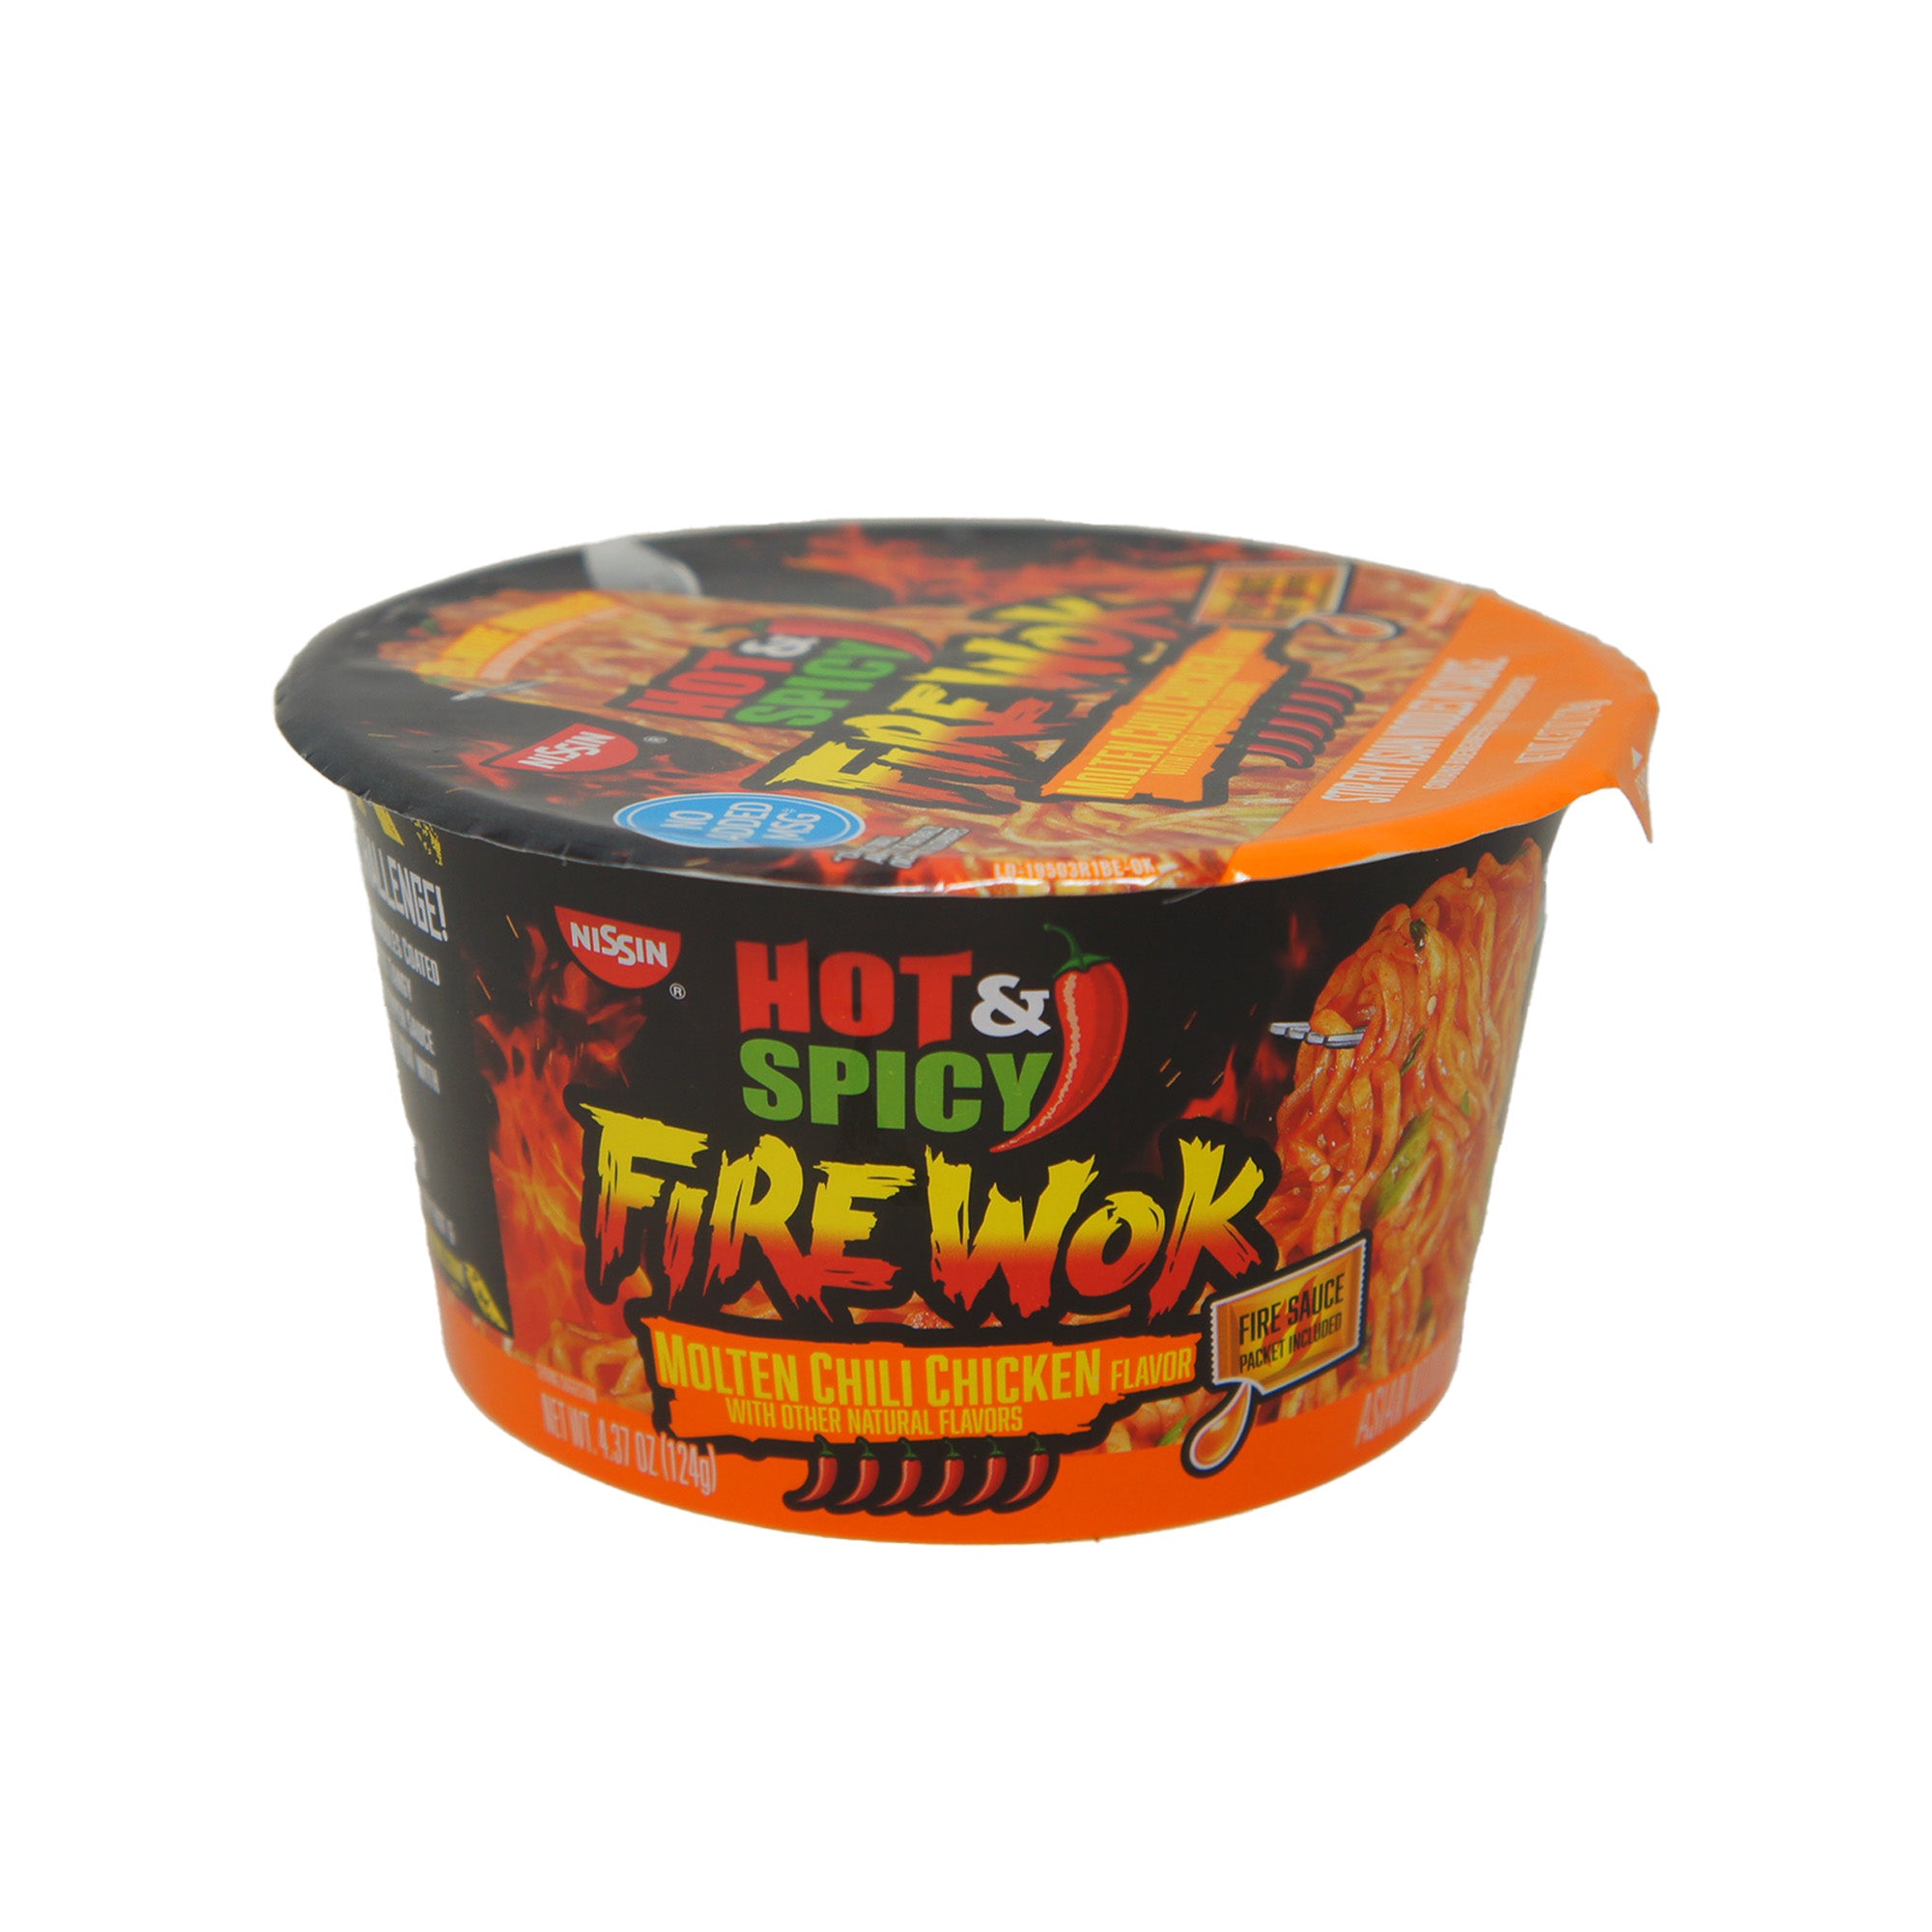 Hot & Spicy Firewok, Molten Chili Chicken Flavor, 4.37 oz